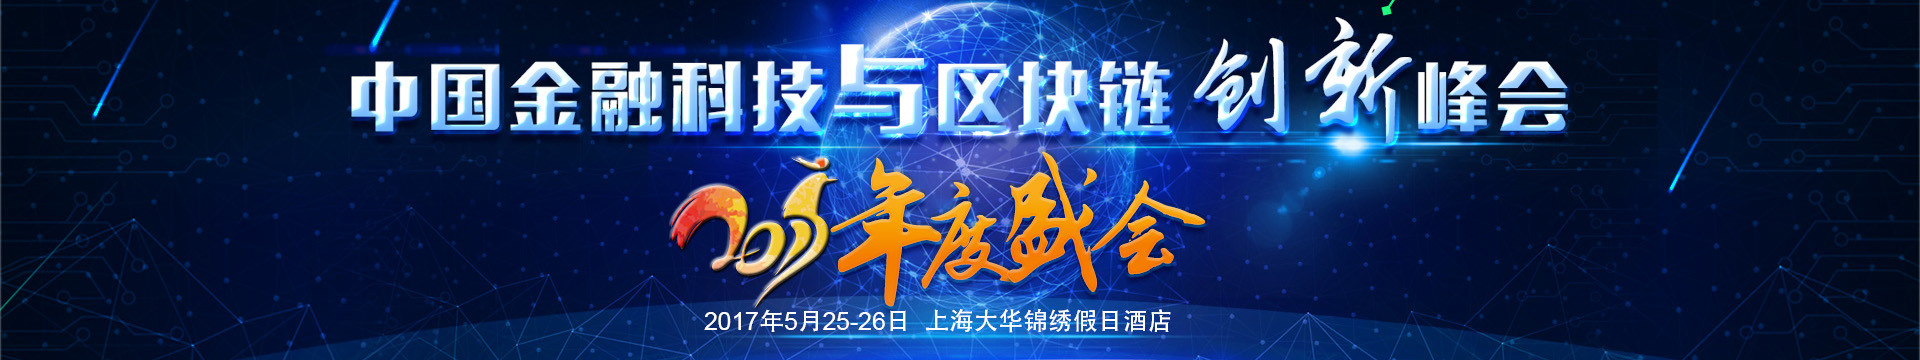 中国金融科技与区块链创新峰会2017年度盛会